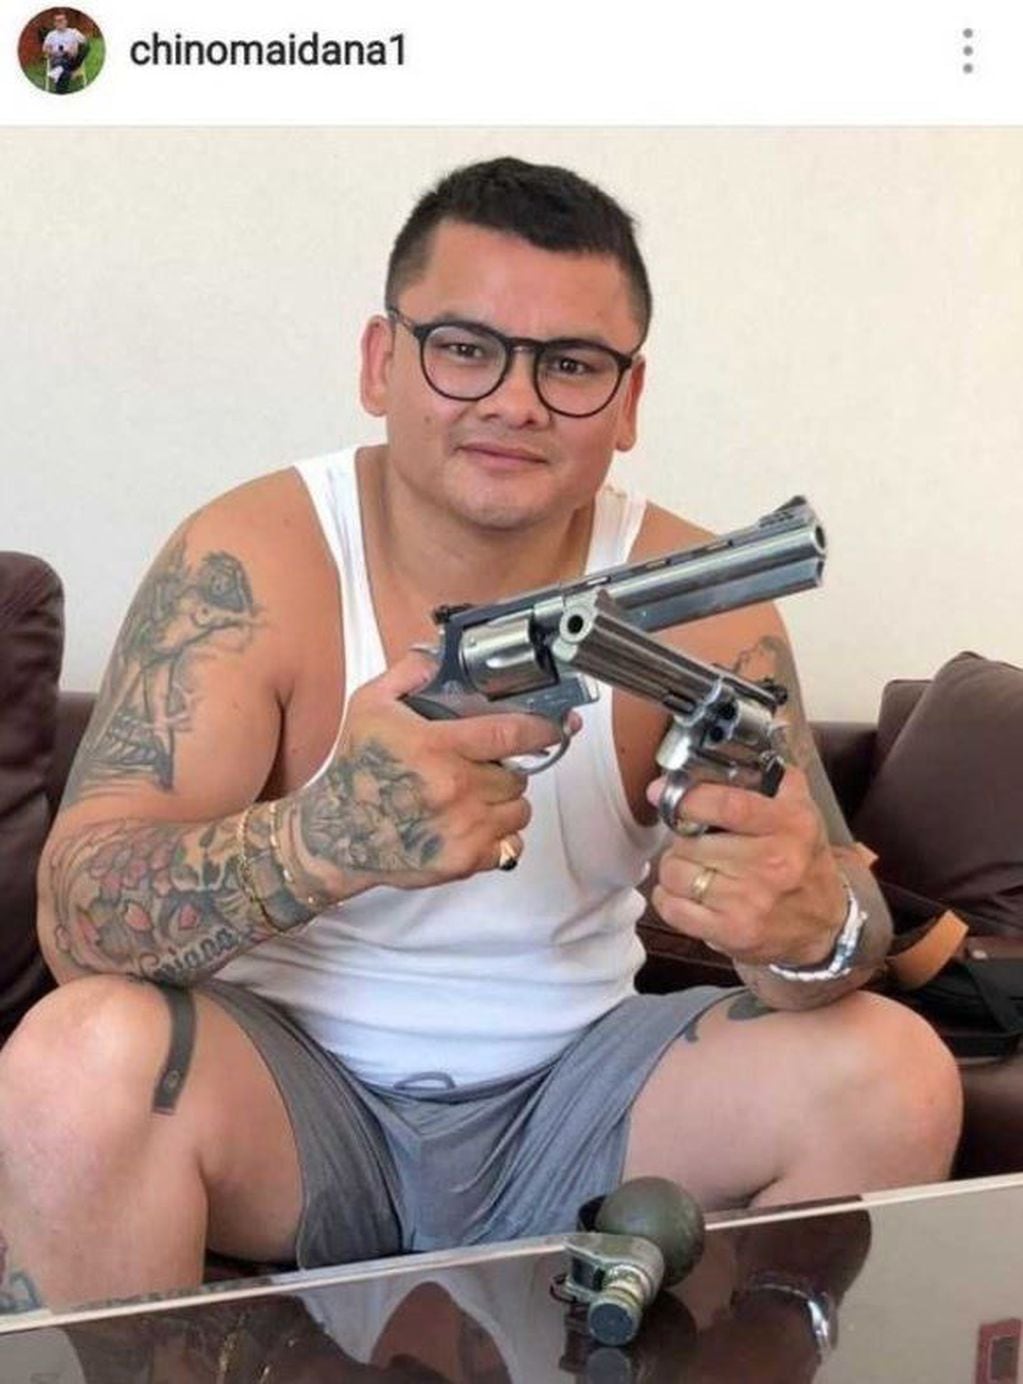 La nueva polémica foto del "Chino" Maidana: con armas y una granada